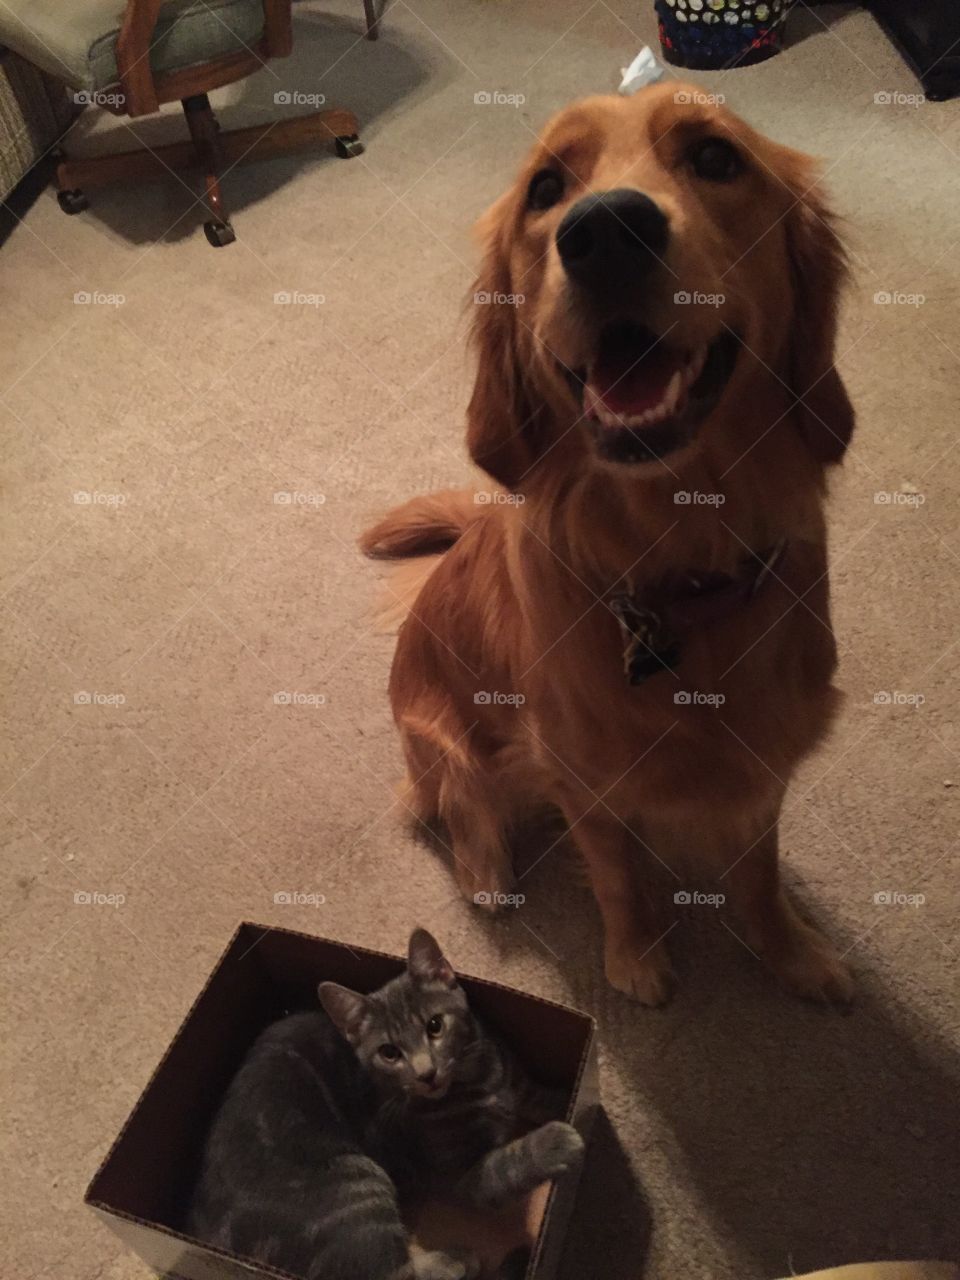 Best friend bond between a cat and dog